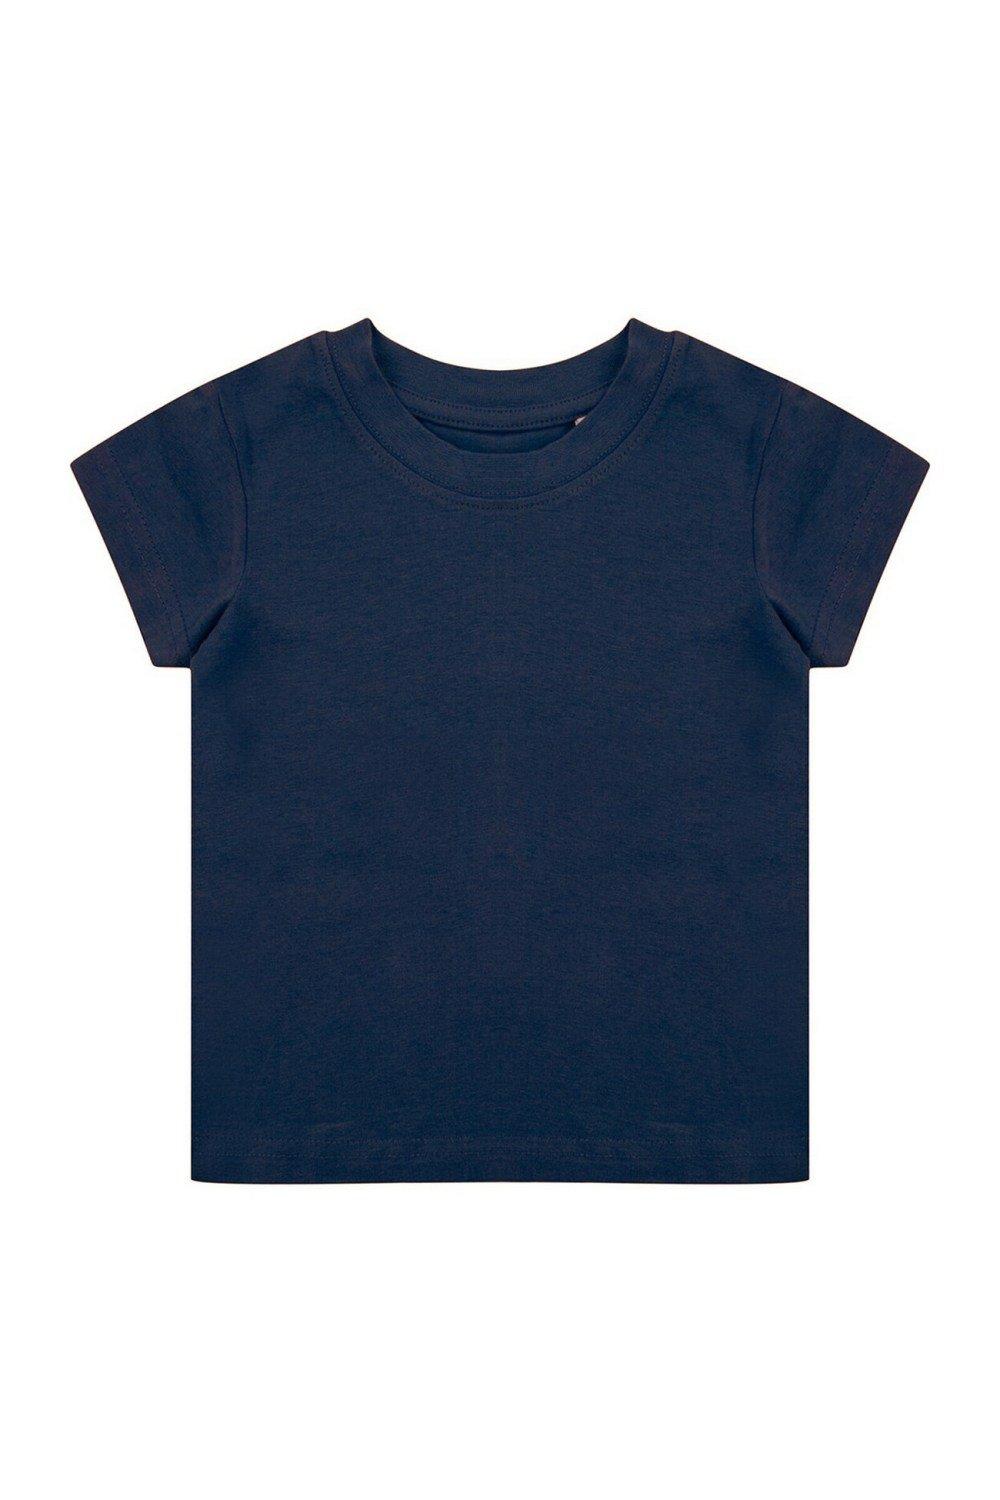 Органическая футболка Larkwood, темно-синий костюм размер 18 24 мес